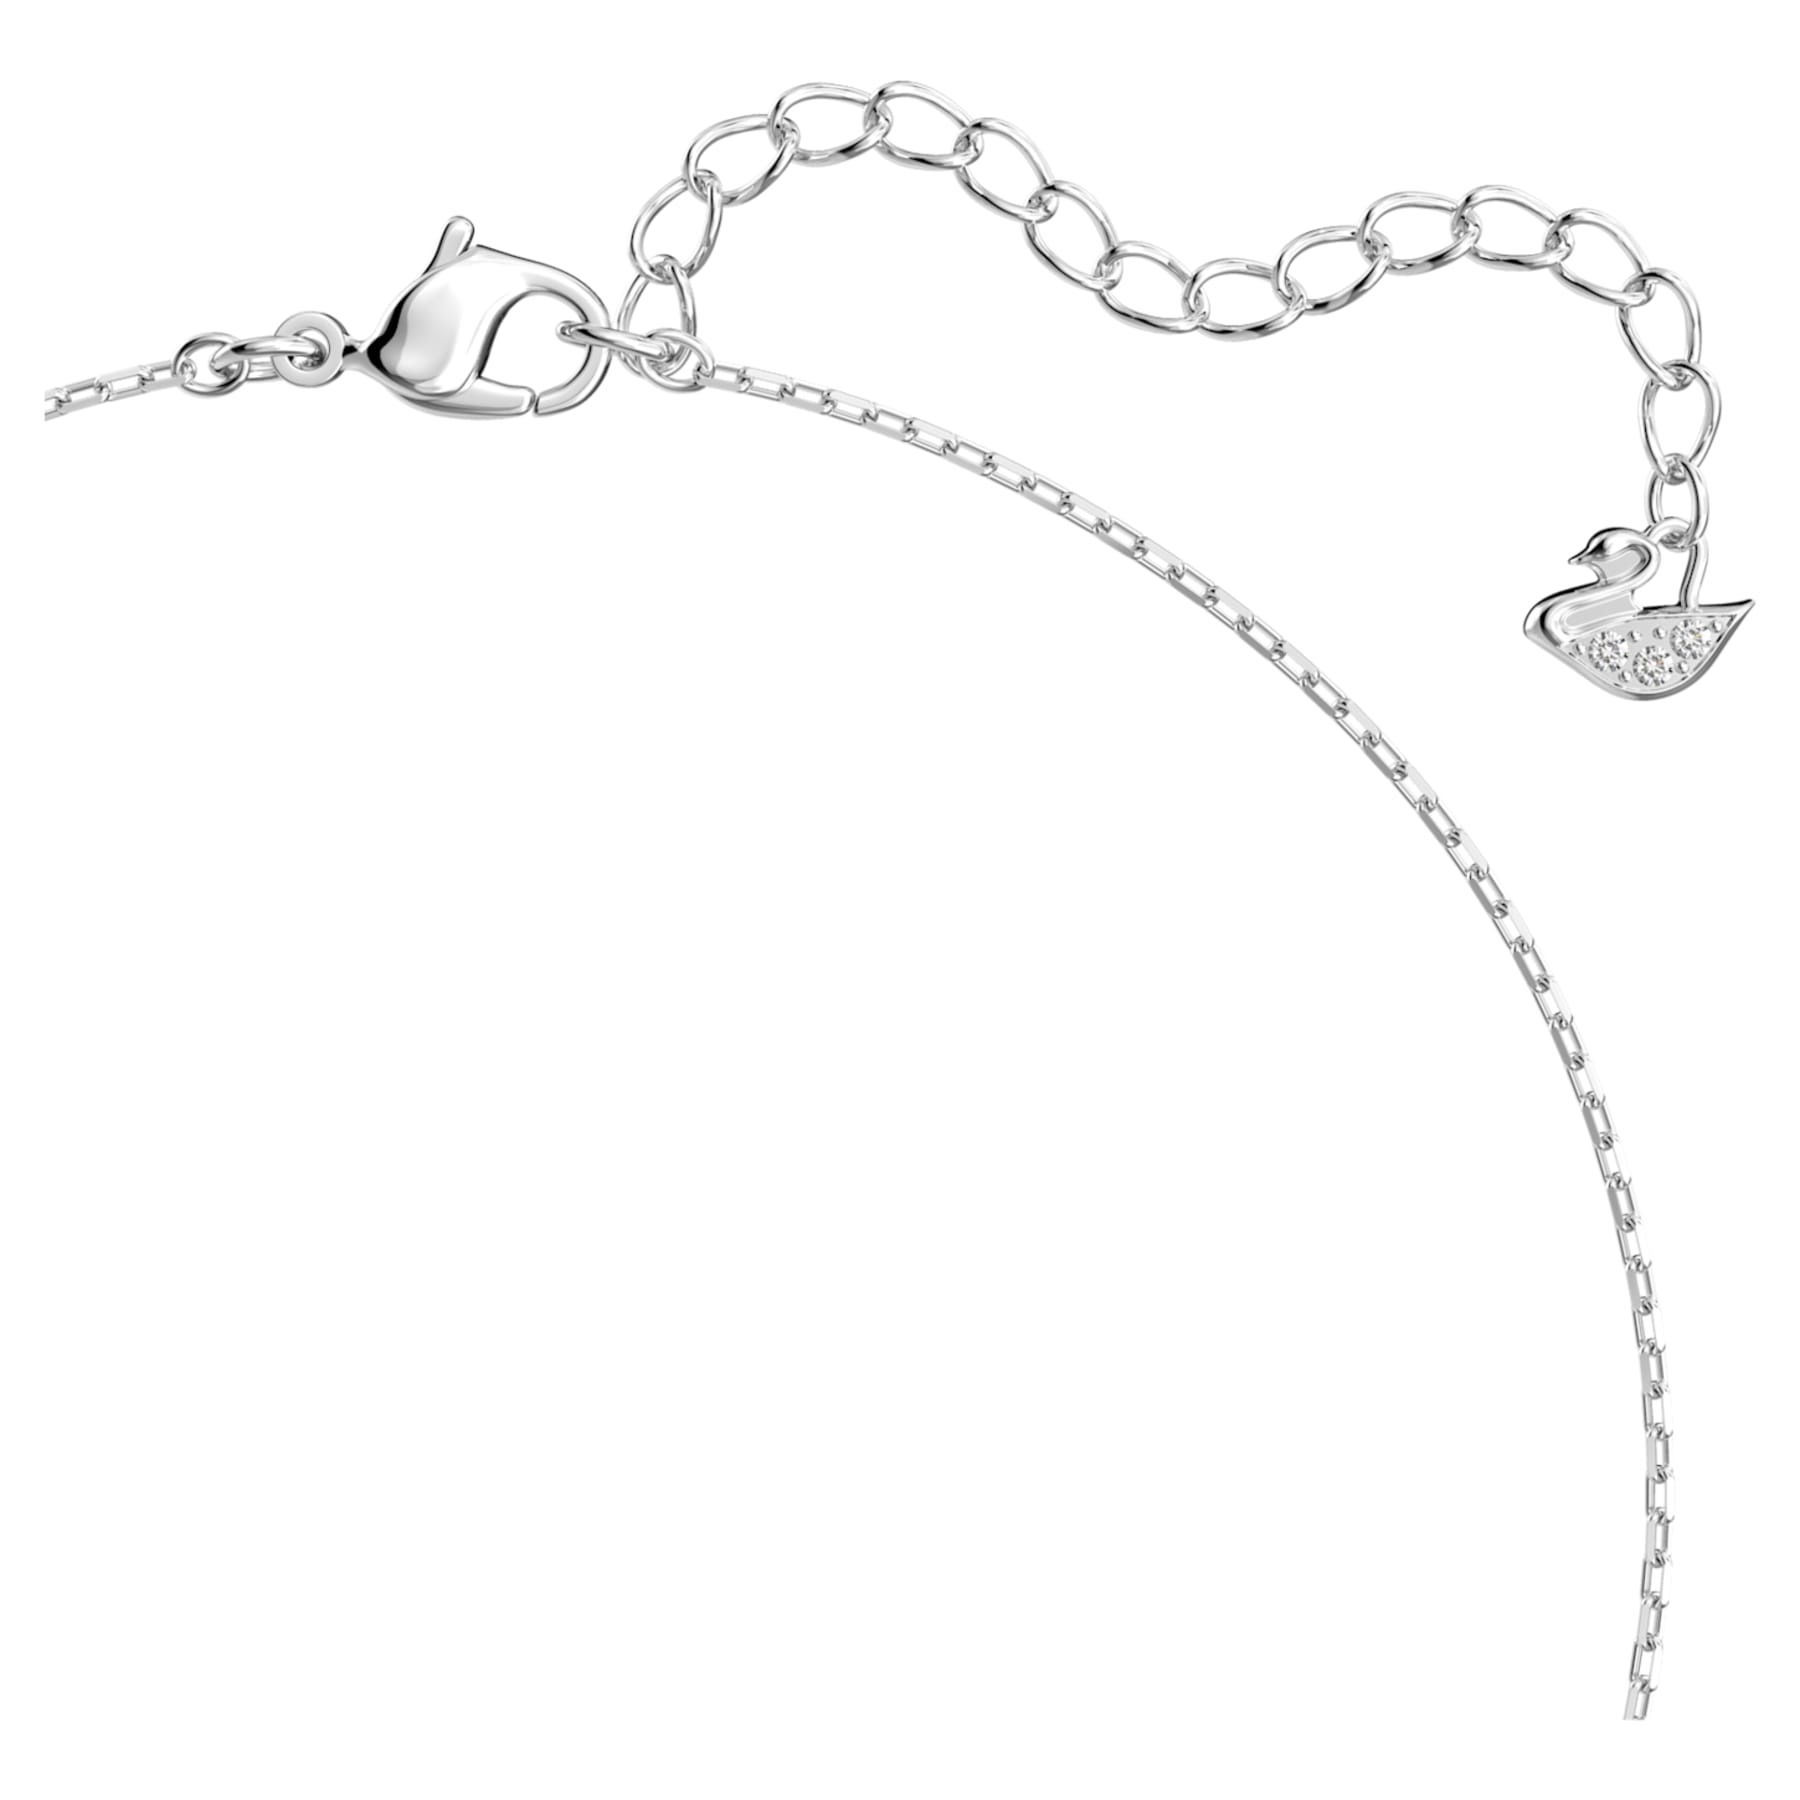 Attract - White Silver - Heart - Necklace - Swarovski